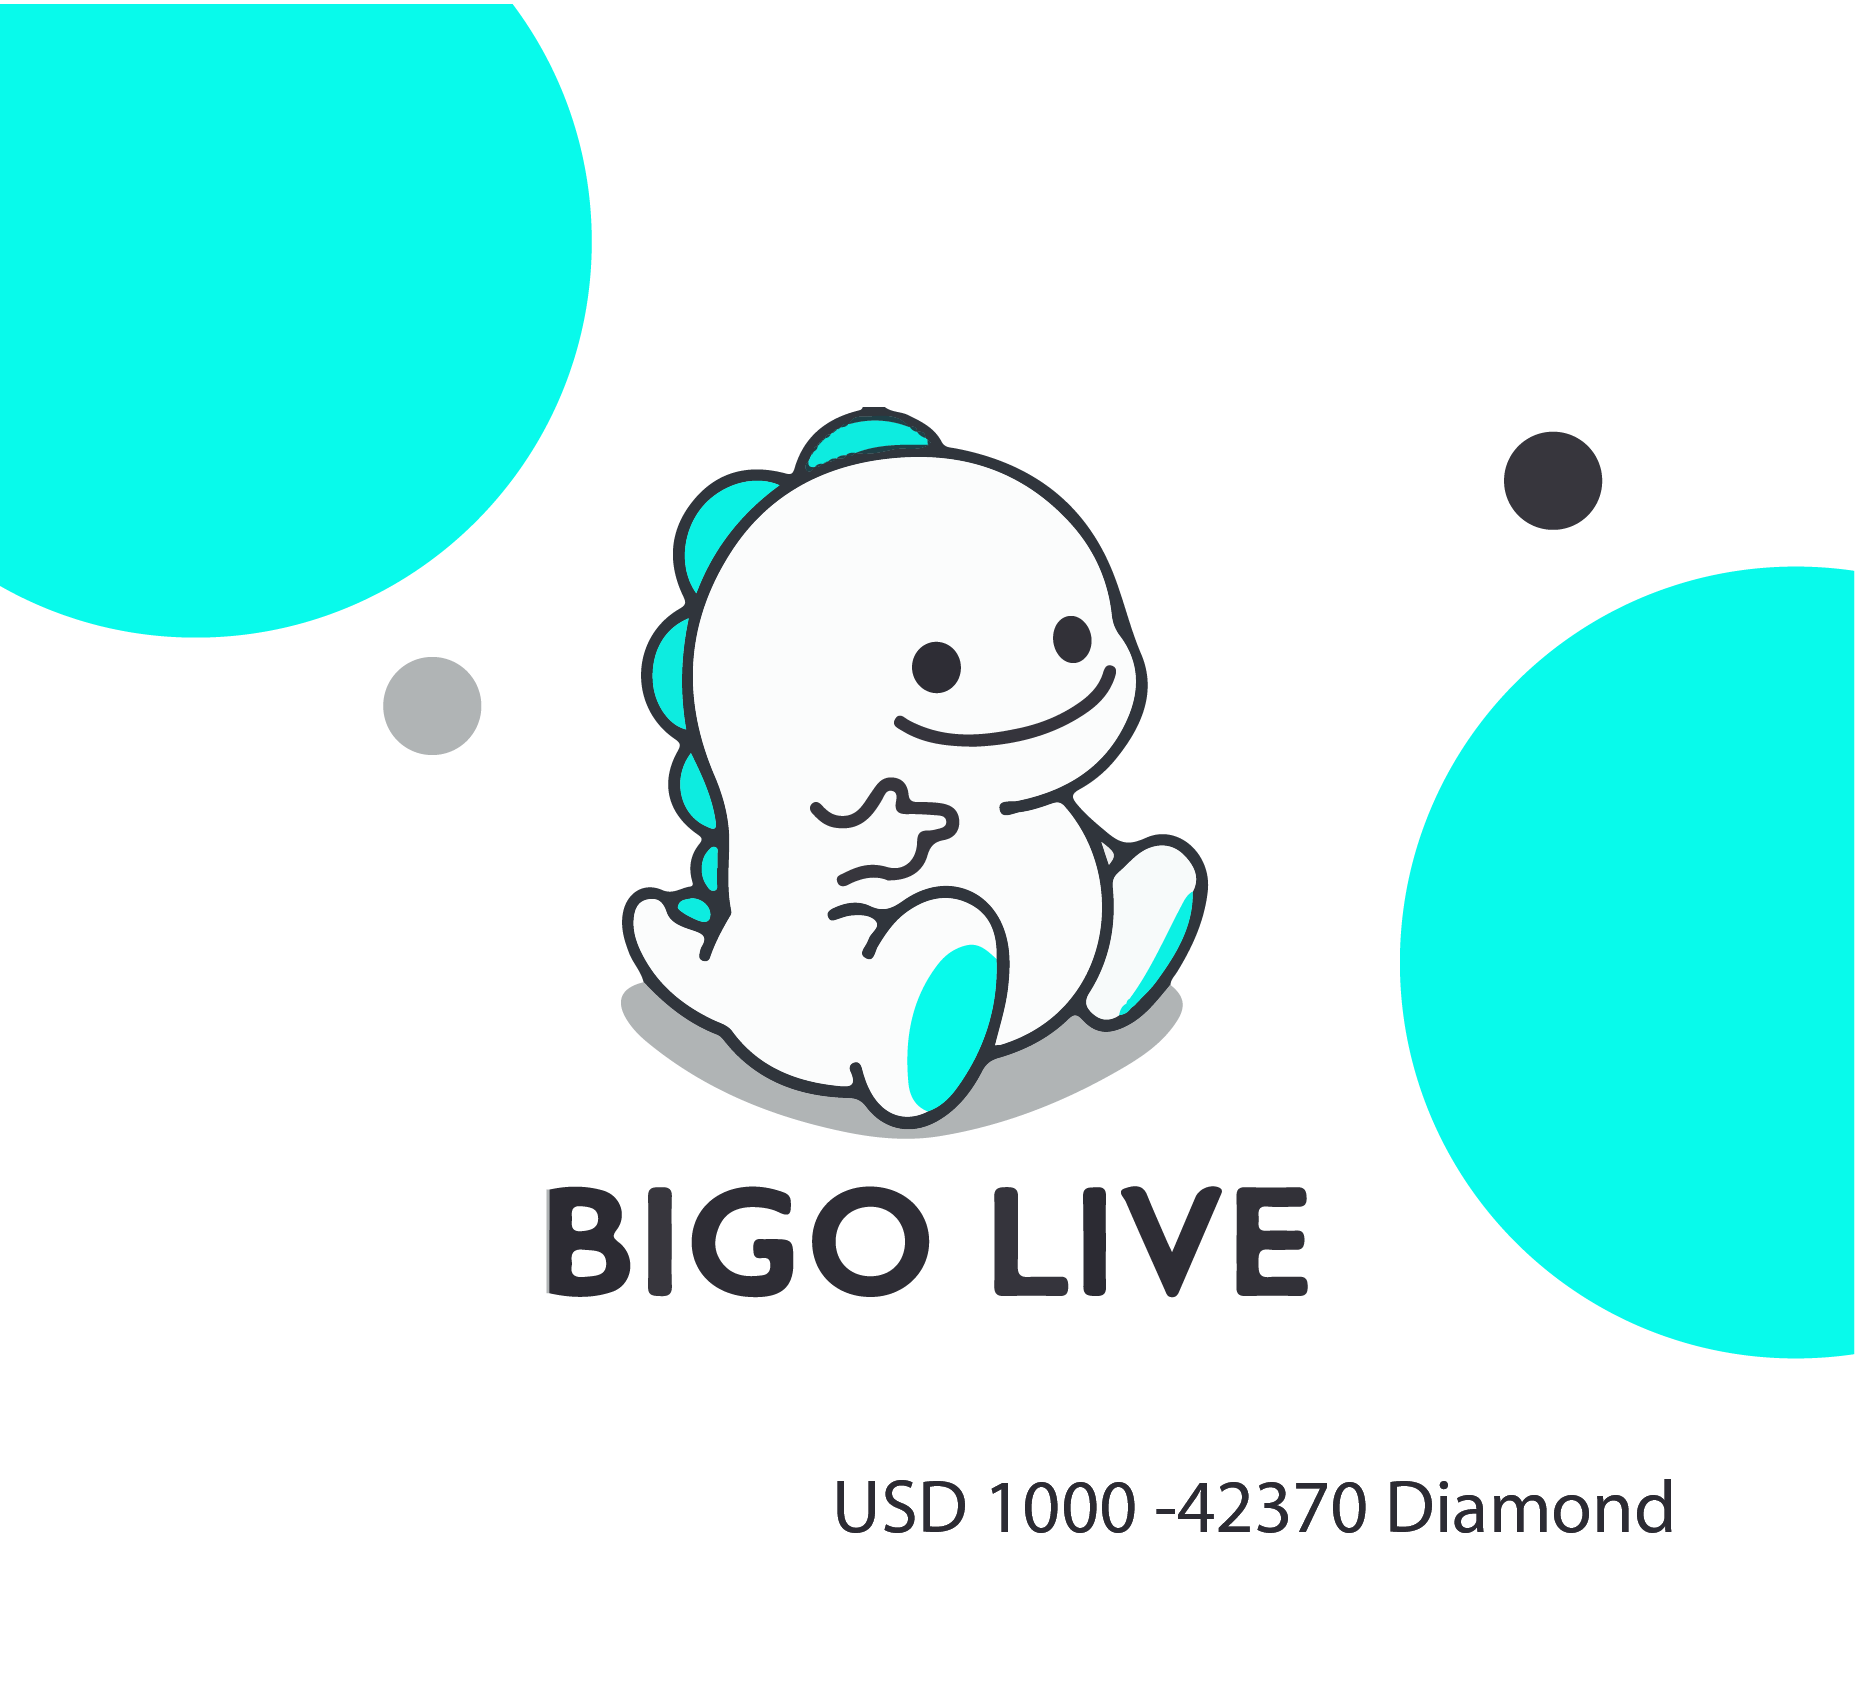 Bigo Live 1000 USD - 42370 Diamond